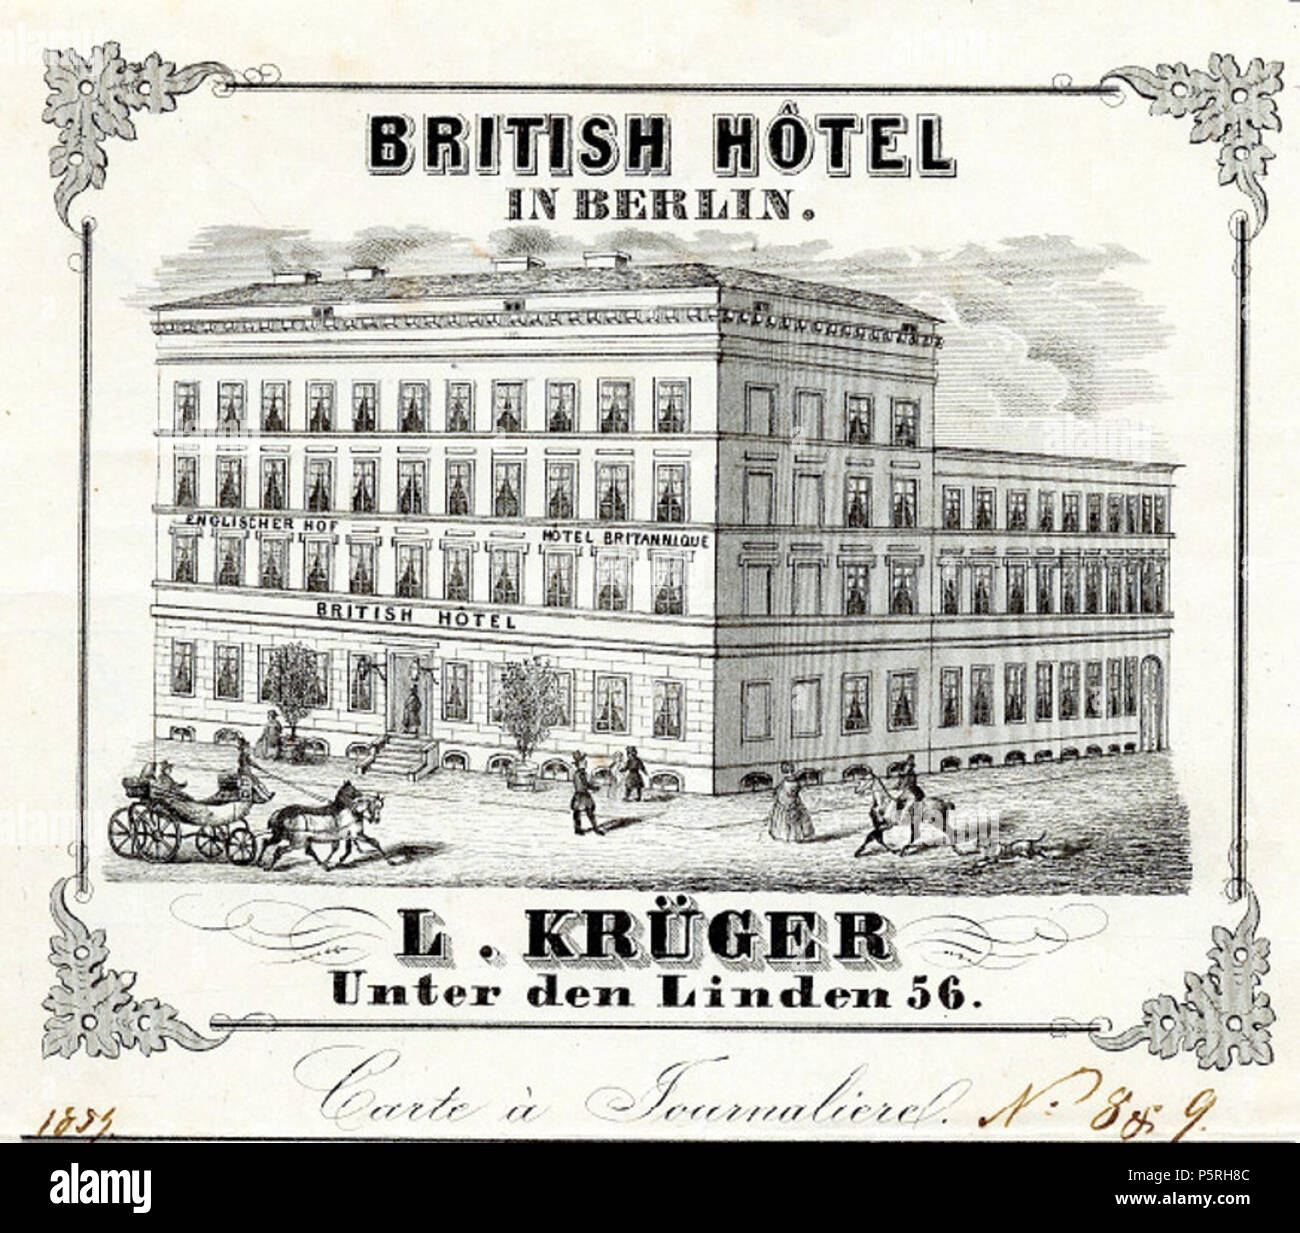 N/A. Deutsch: Bild von der Tageskarte von 1854 des Hotels (Carte a Journalierel) . 1854. Britisch Hotel 236 British Hotel Tageskarte Stock Photo